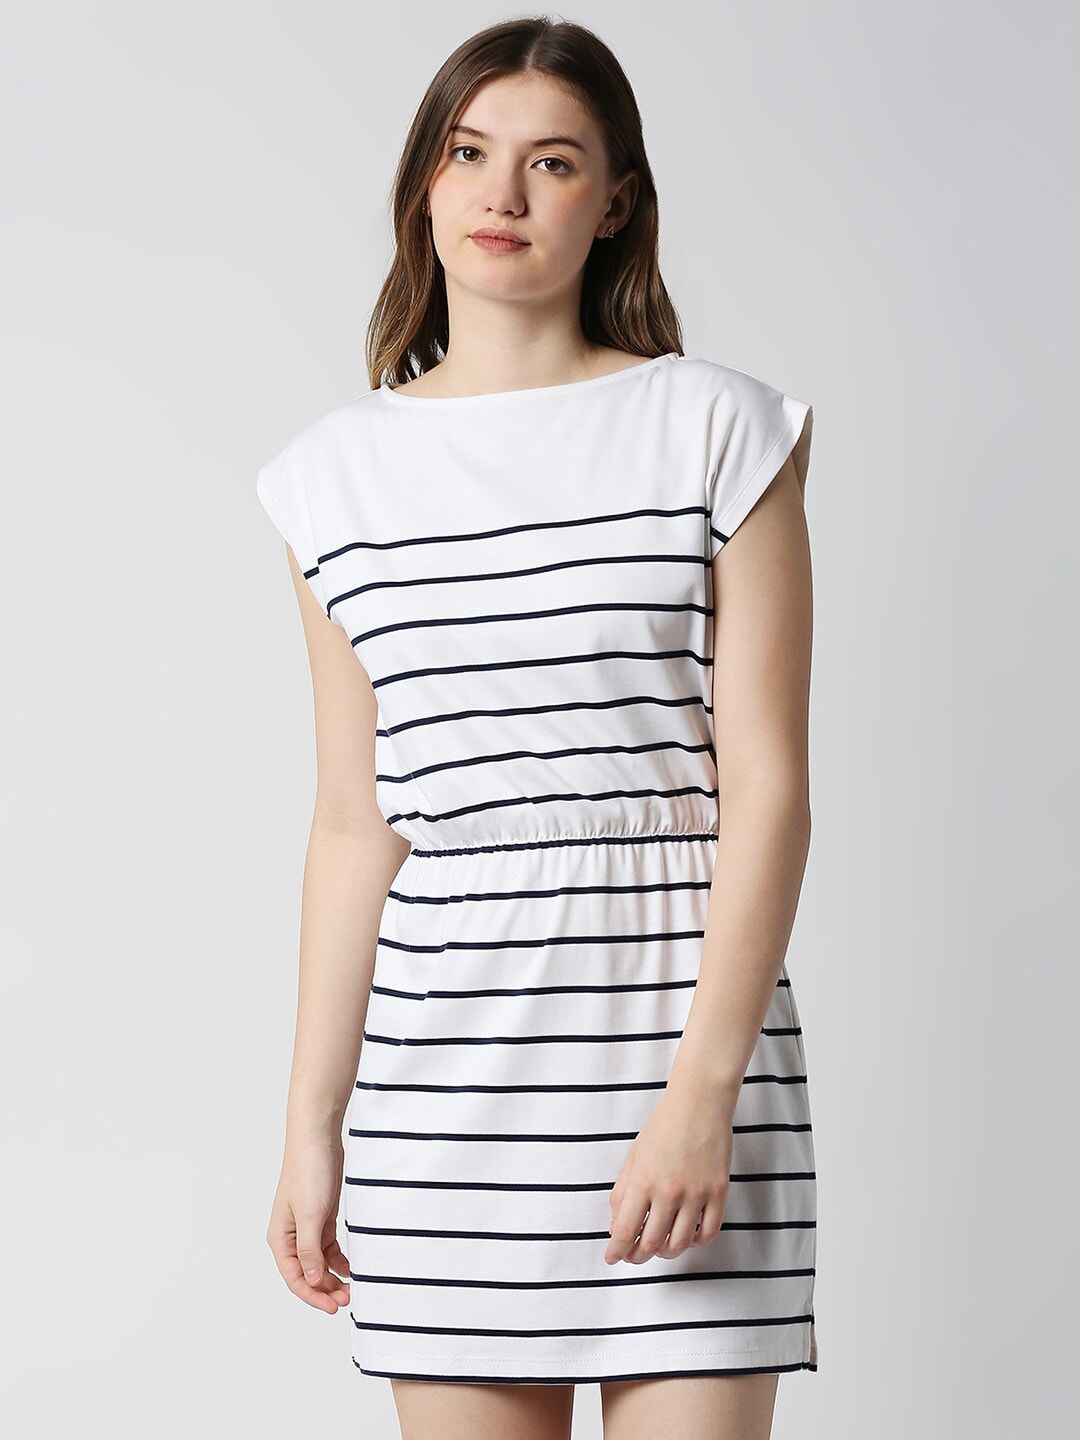 Disrupt White Striped Sheath Mini Dress Price in India